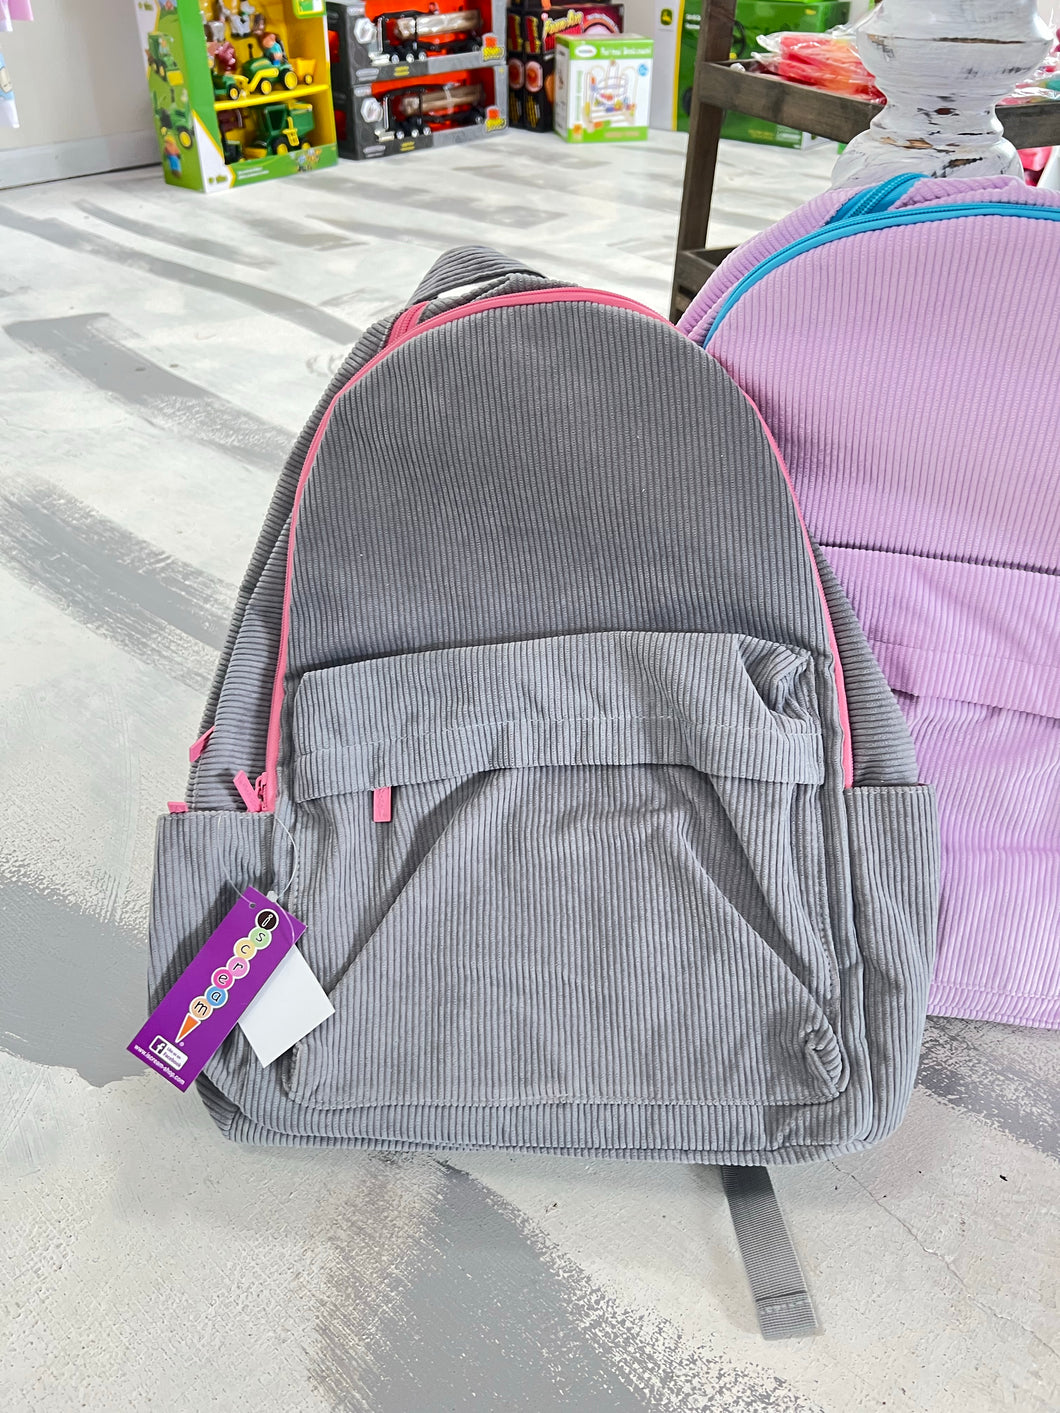 Grey Corduroy Backpack